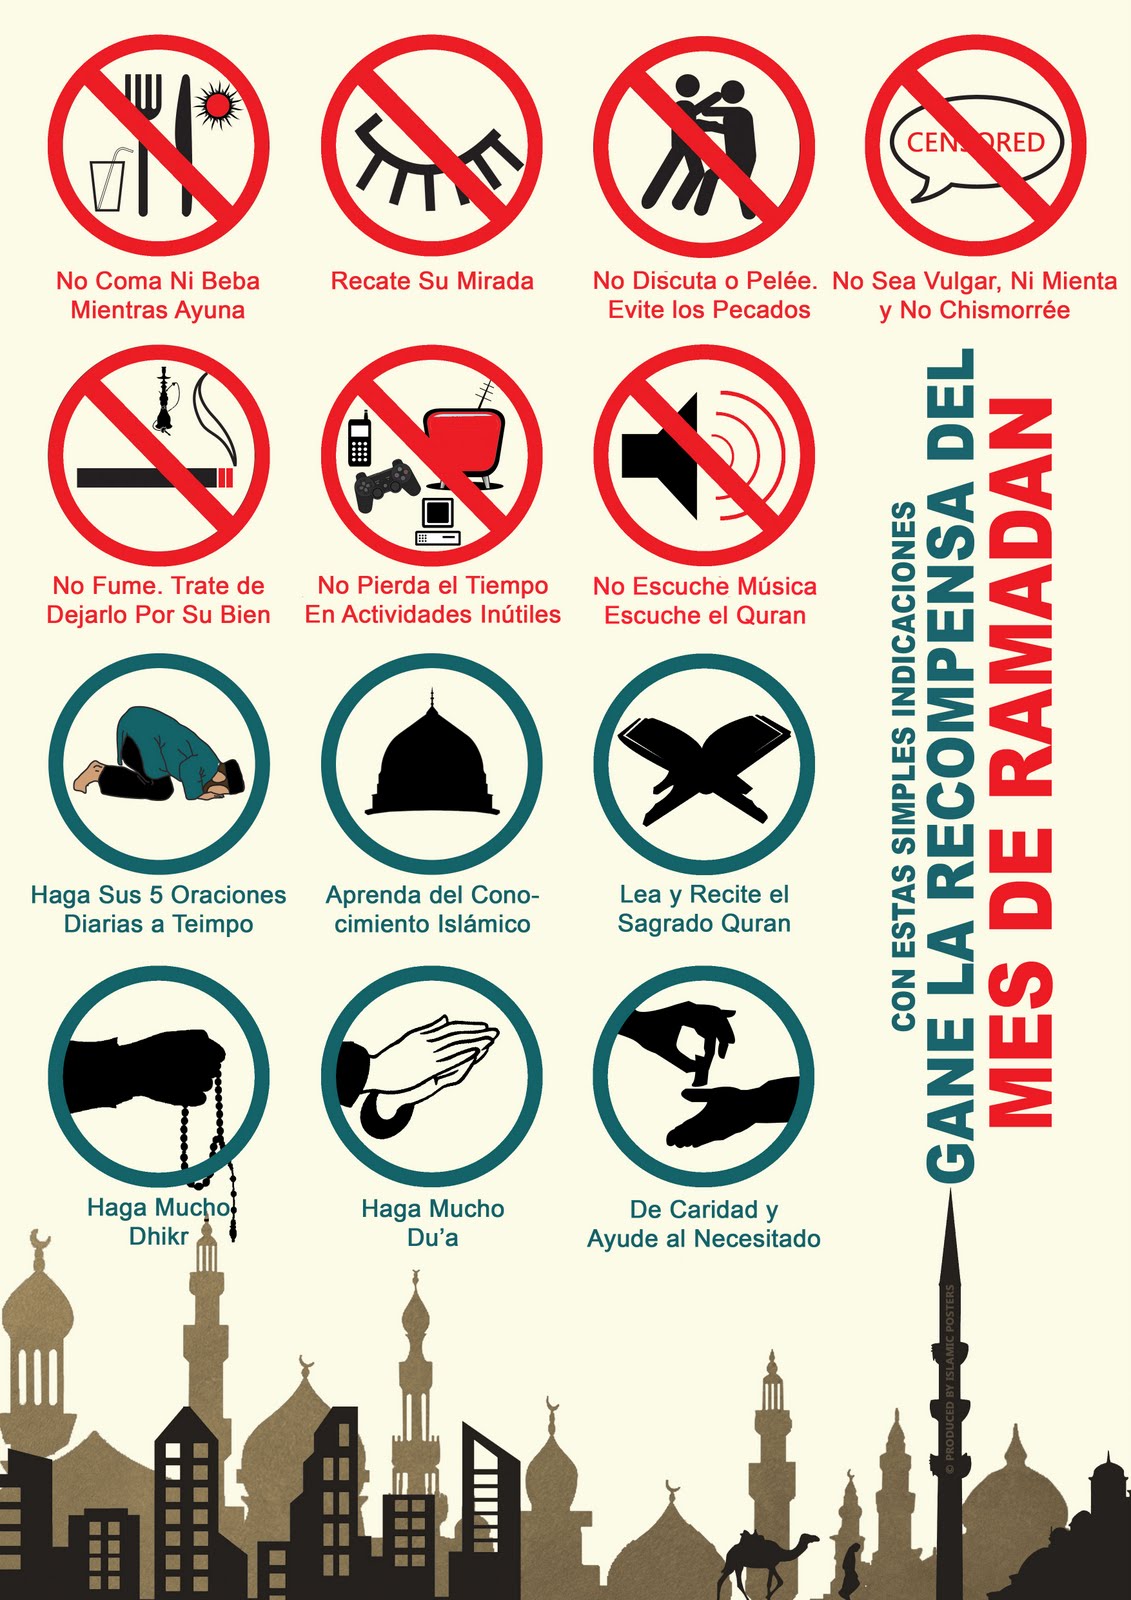 Курить в уразу. Рамадан что нельзя. Чего нельзя в Рамадан. Запреты в месяц Рамадан. Запреты в Рамадан пост.